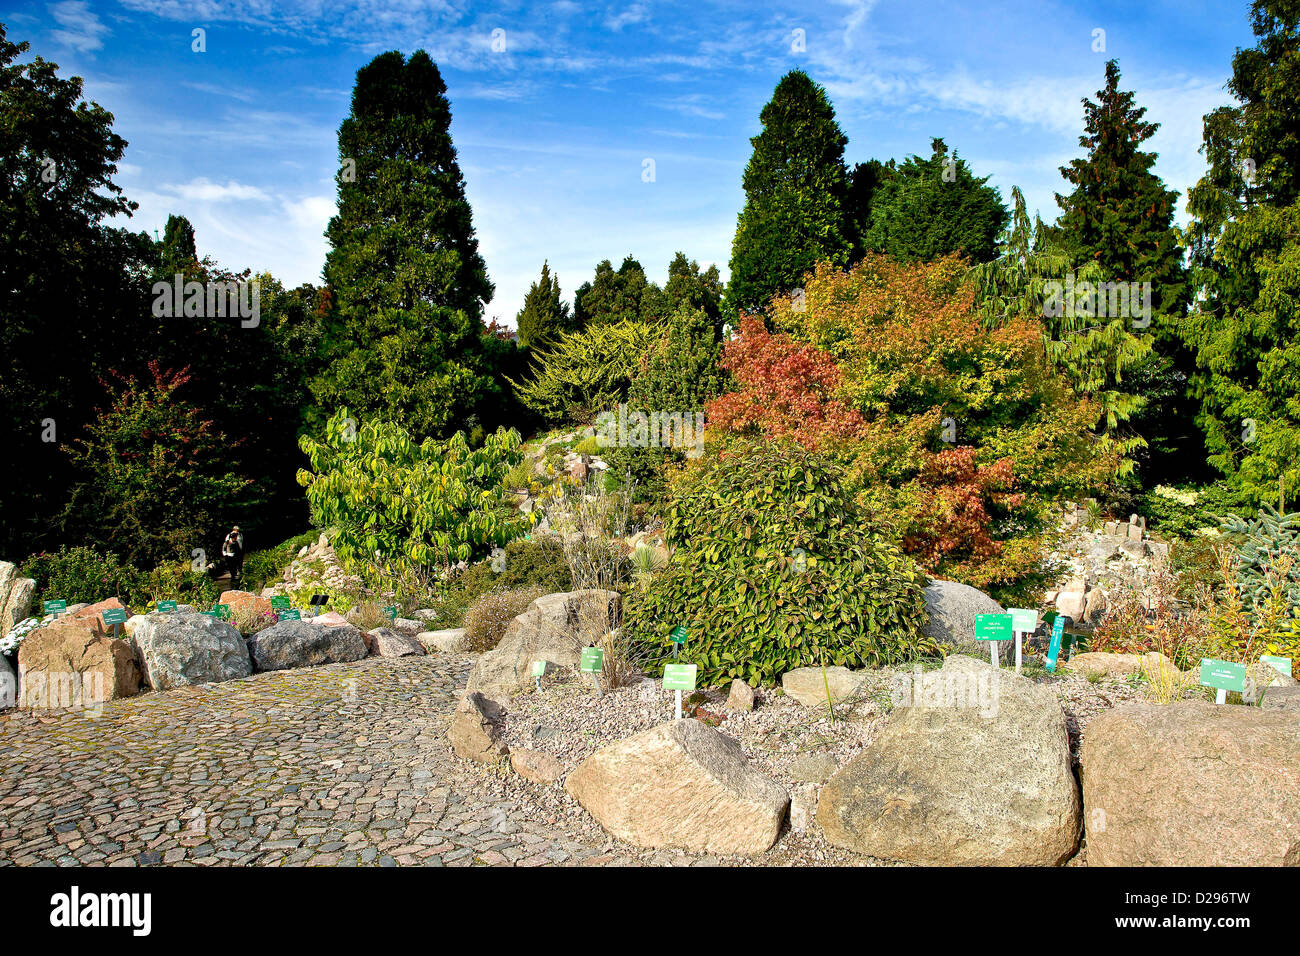 The rock garden in Botanical Garden Stock Photo